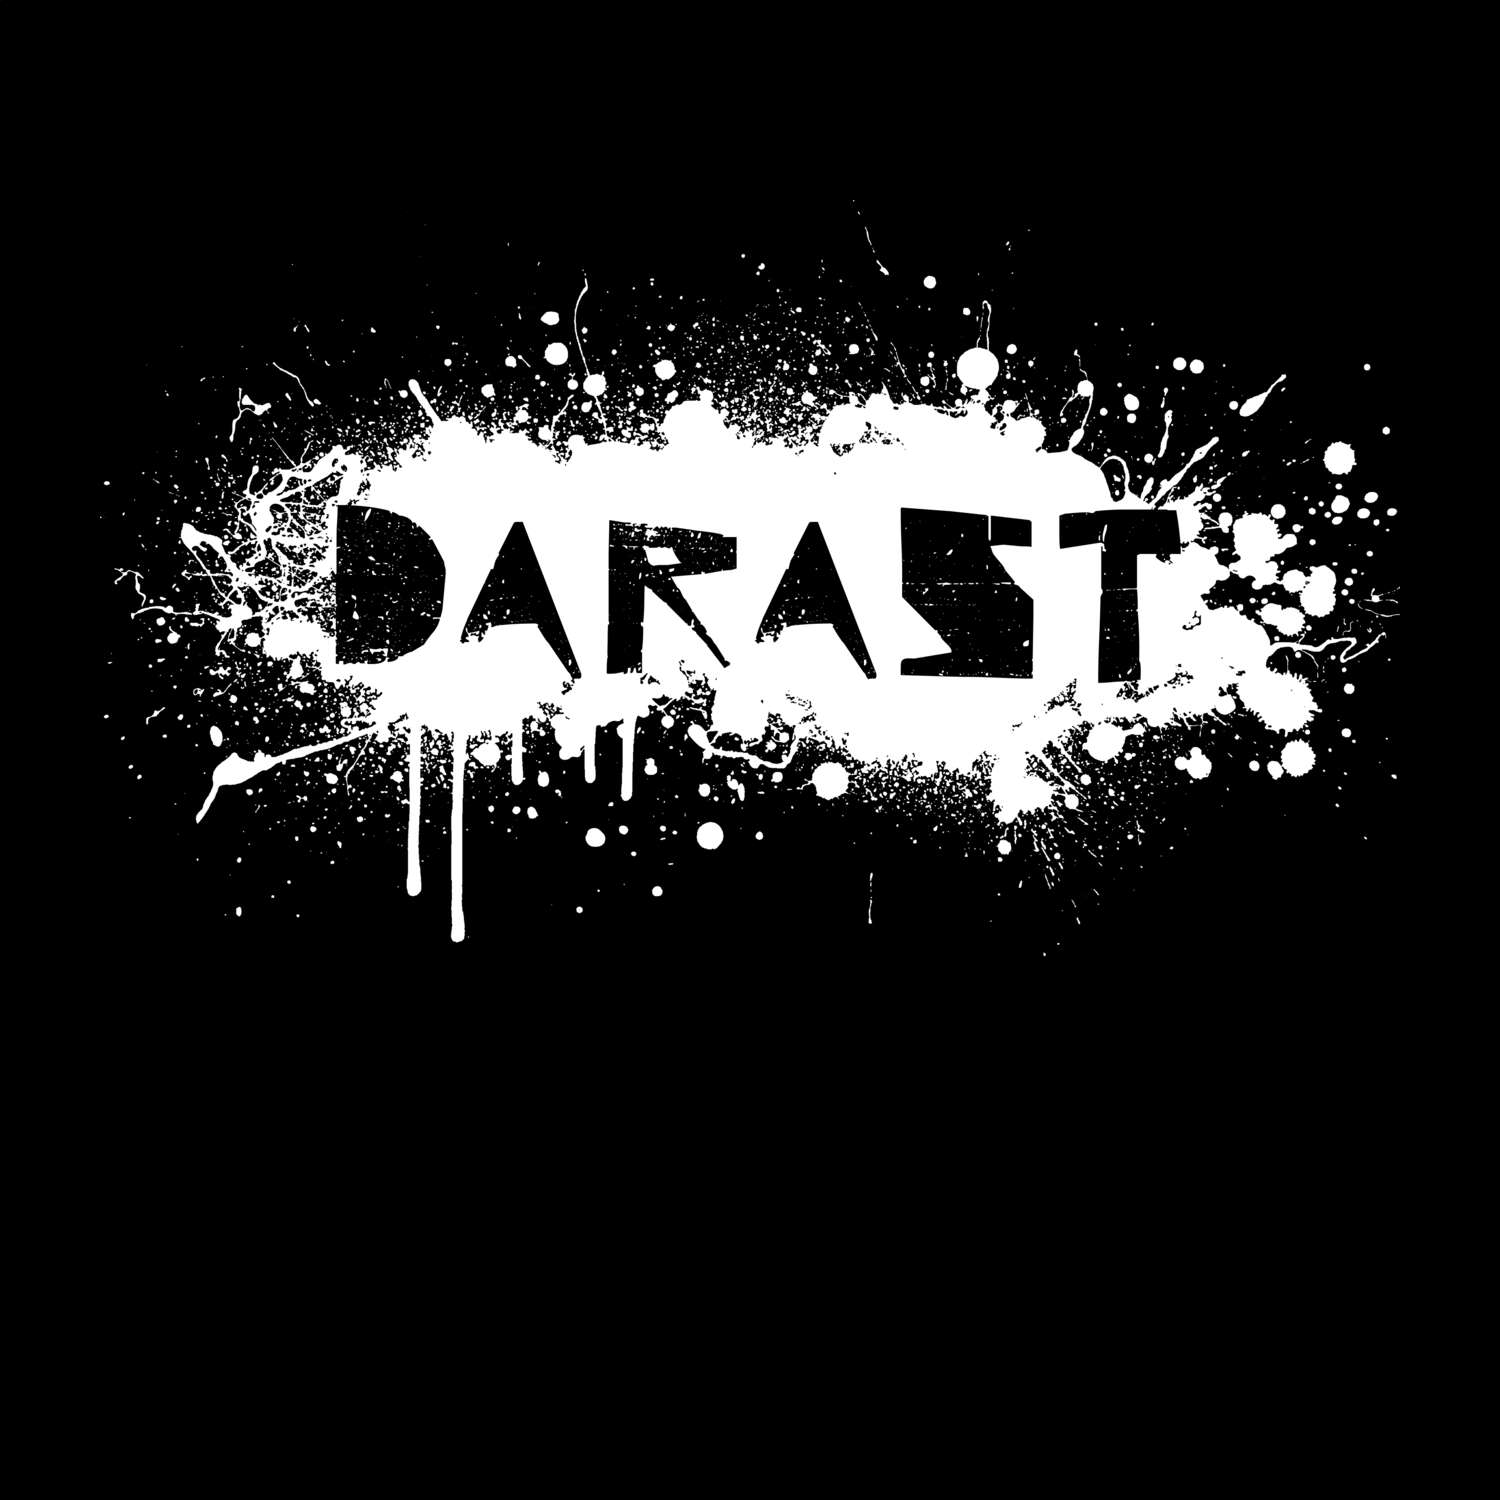 Darast T-Shirt »Paint Splash Punk«